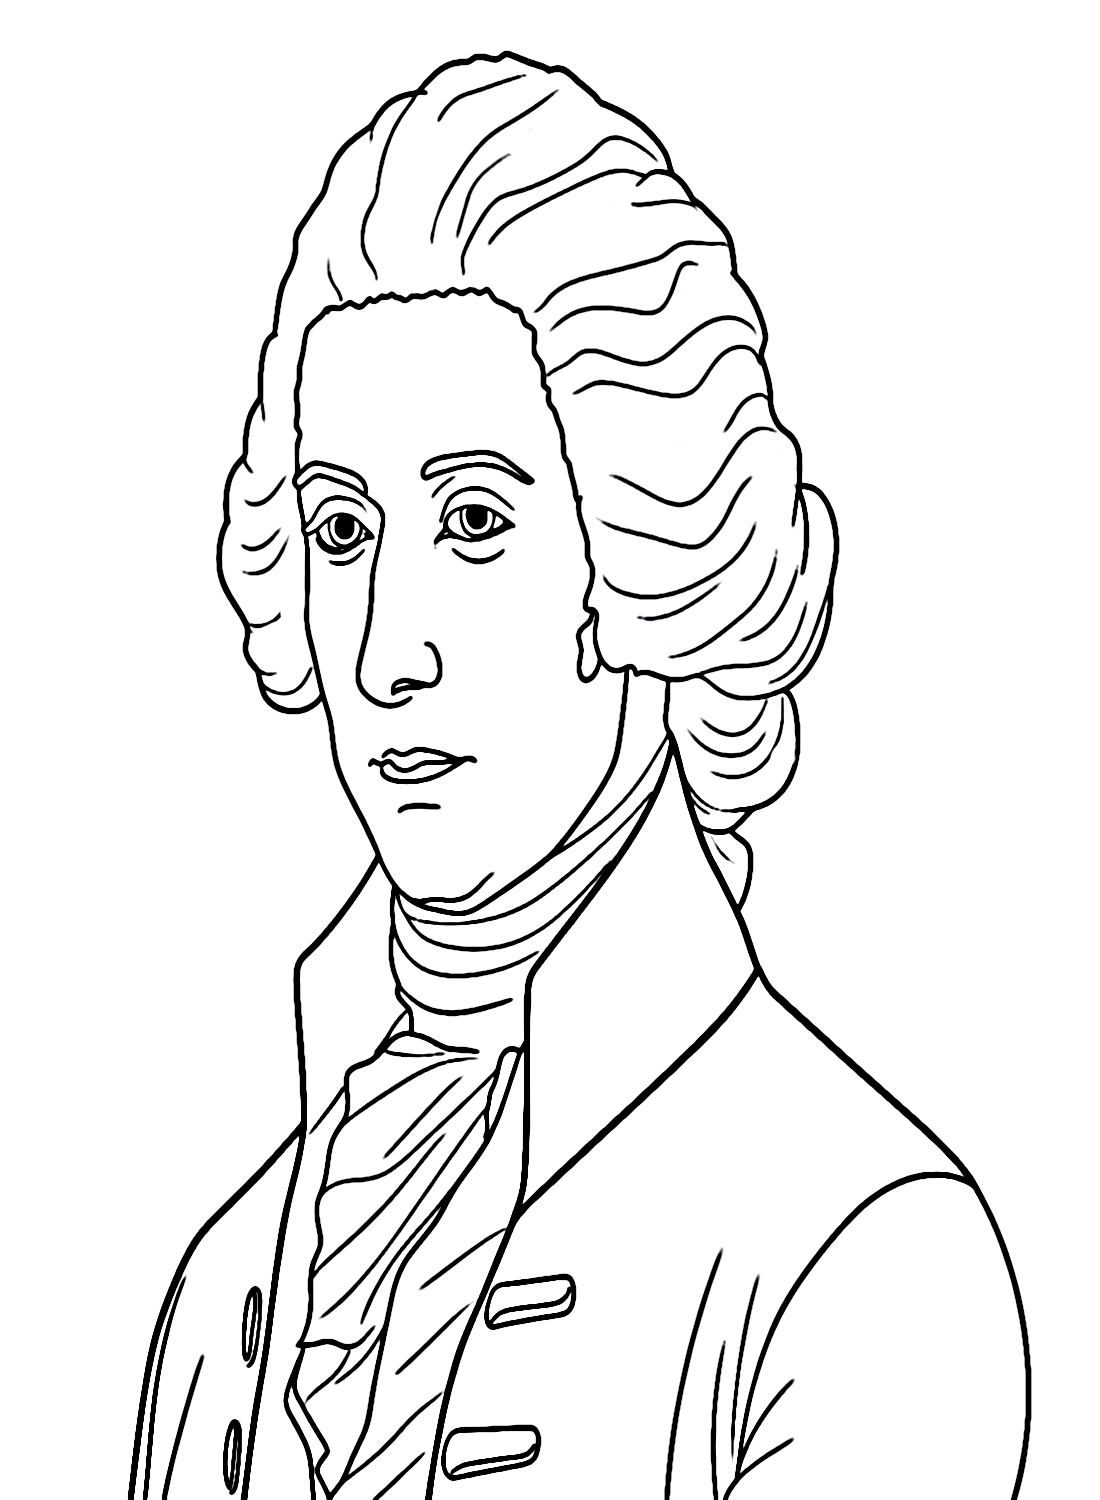 Libera a Alexander Hamilton de Alexander Hamilton